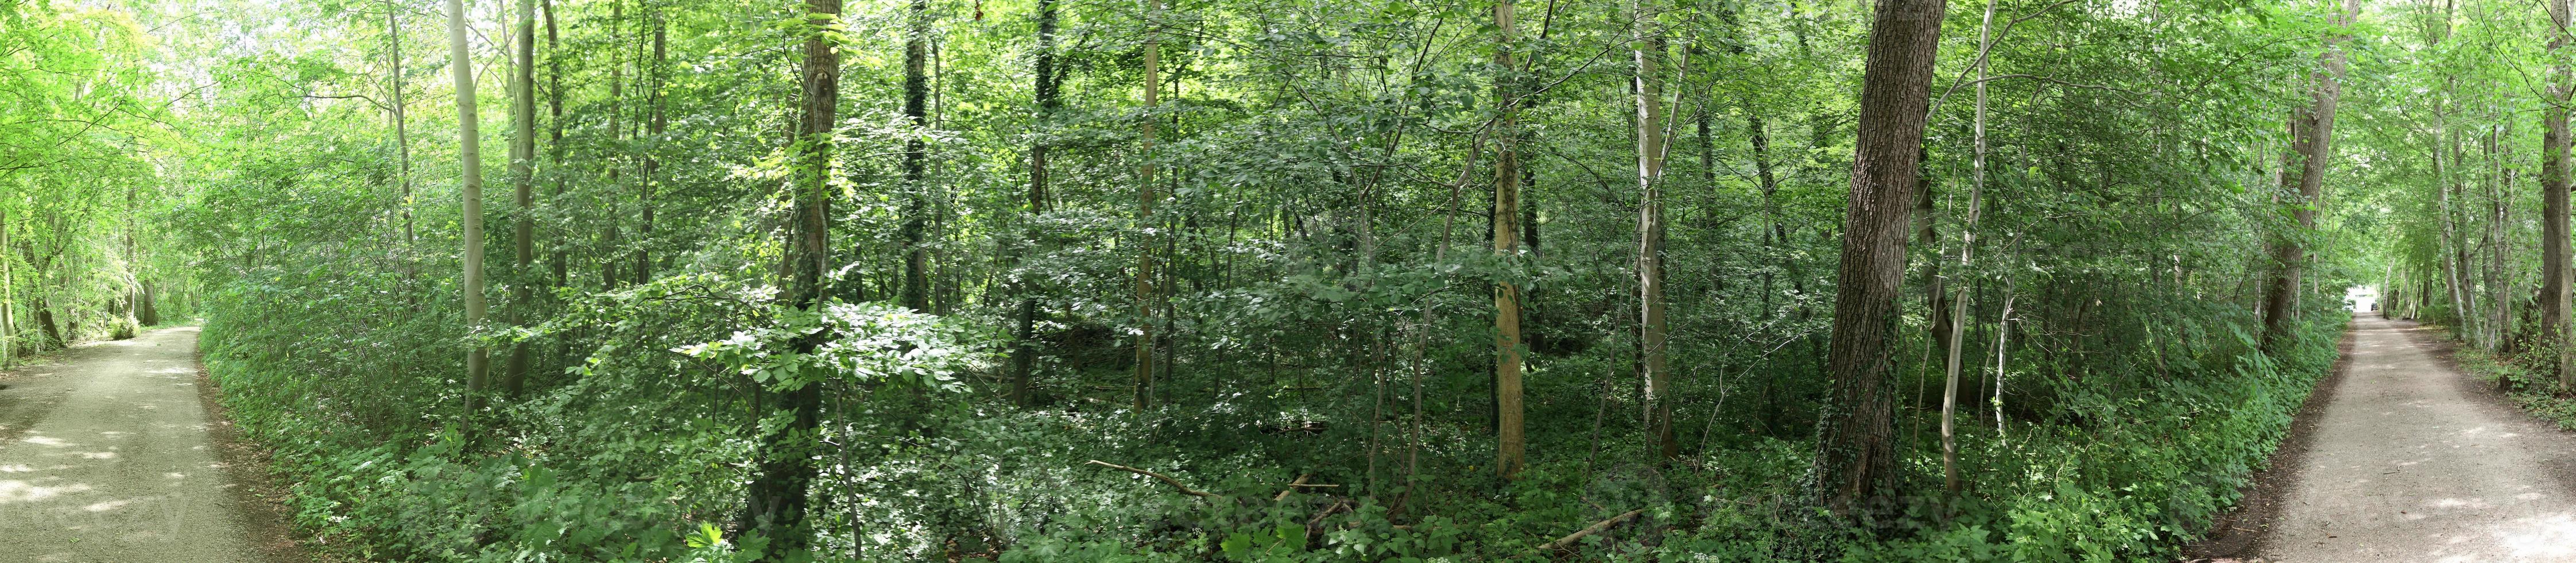 hermosa vista a un denso bosque verde con luz solar brillante que proyecta una sombra profunda foto